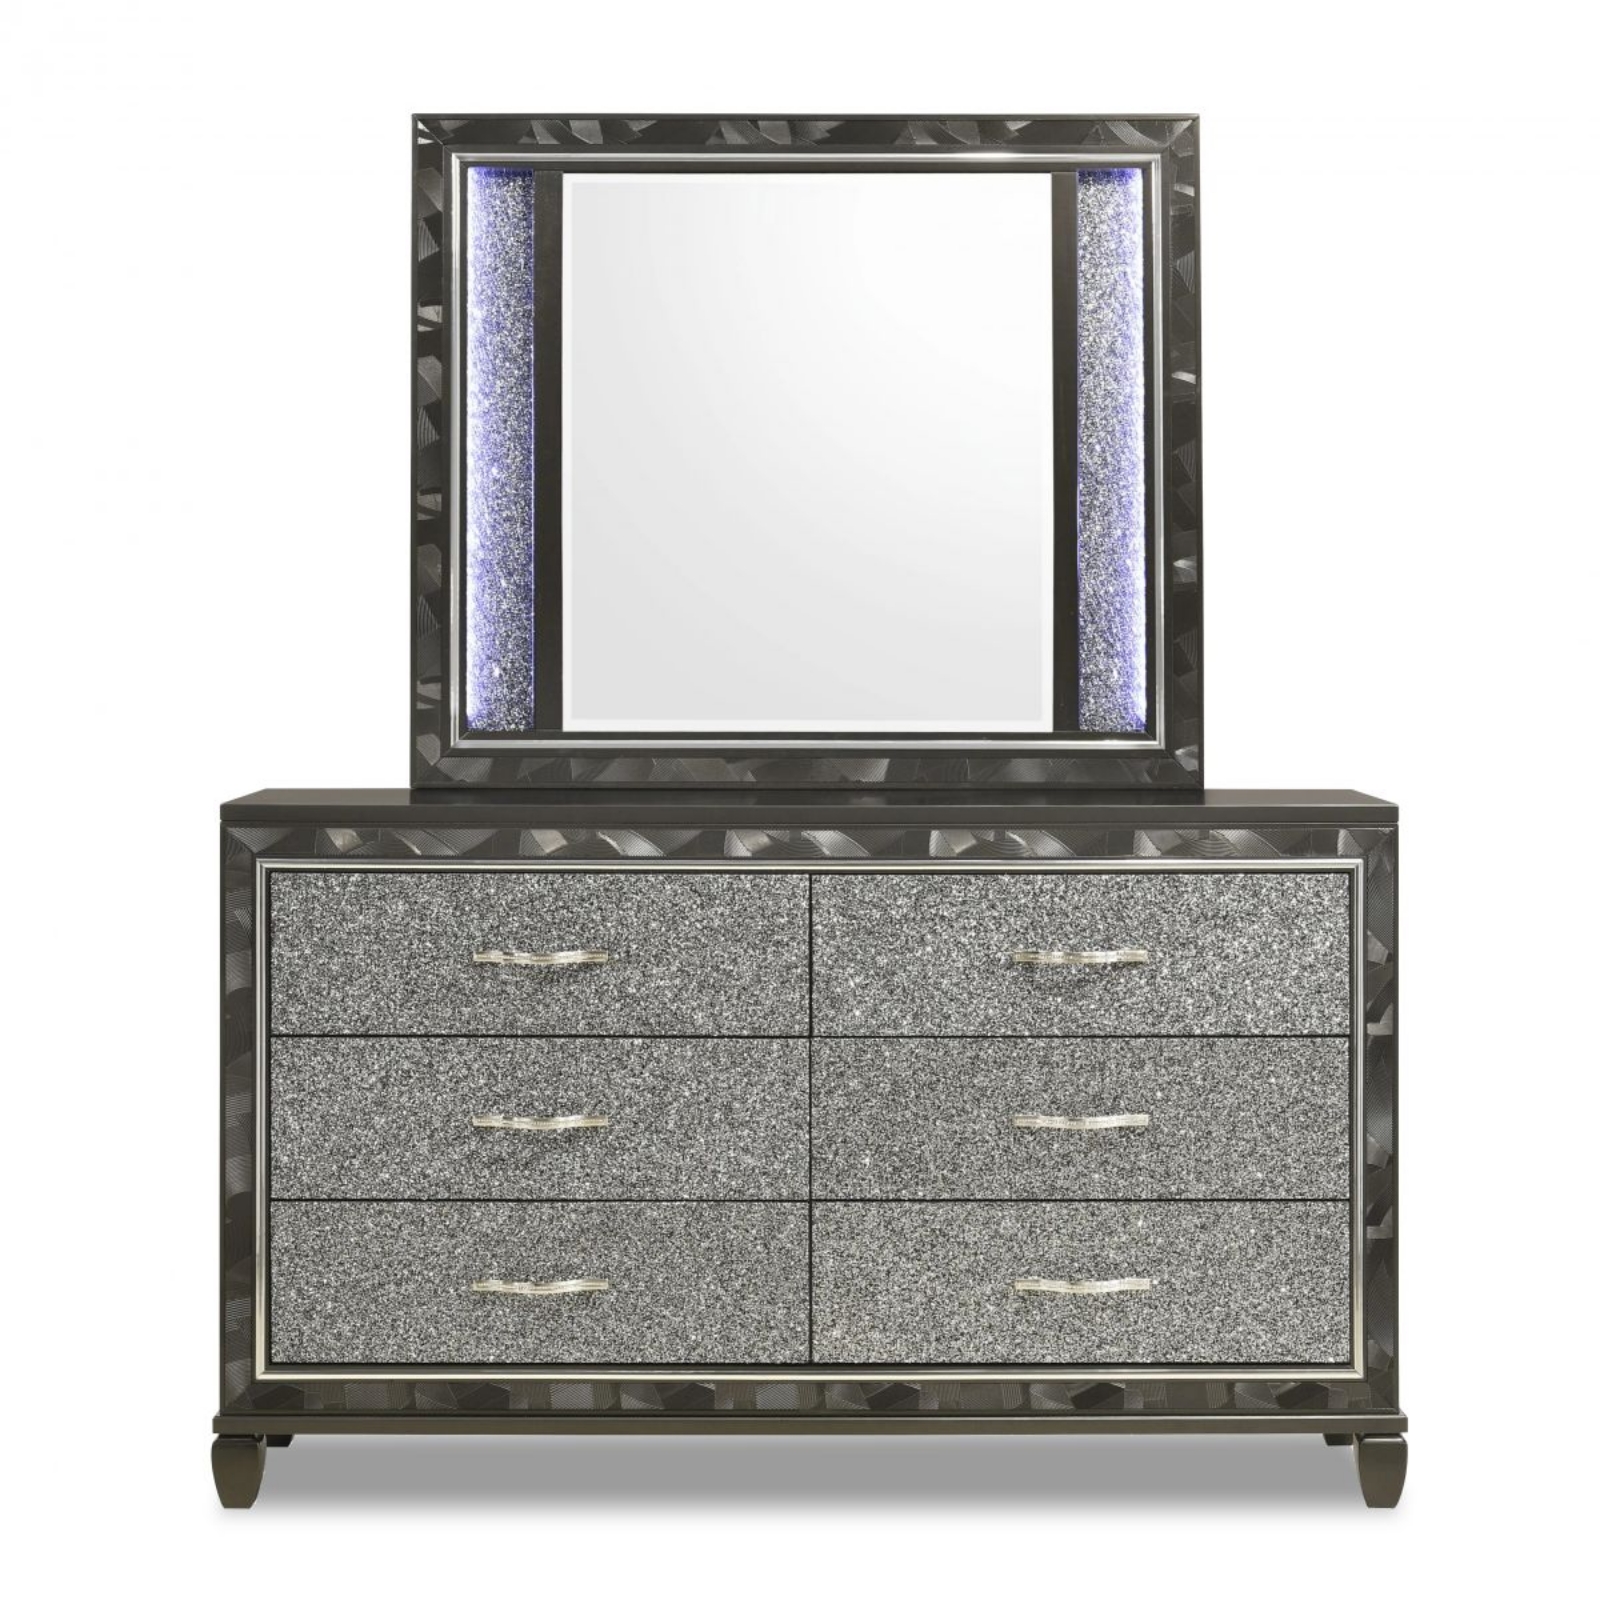 Picture of Radiance Dresser & Mirror